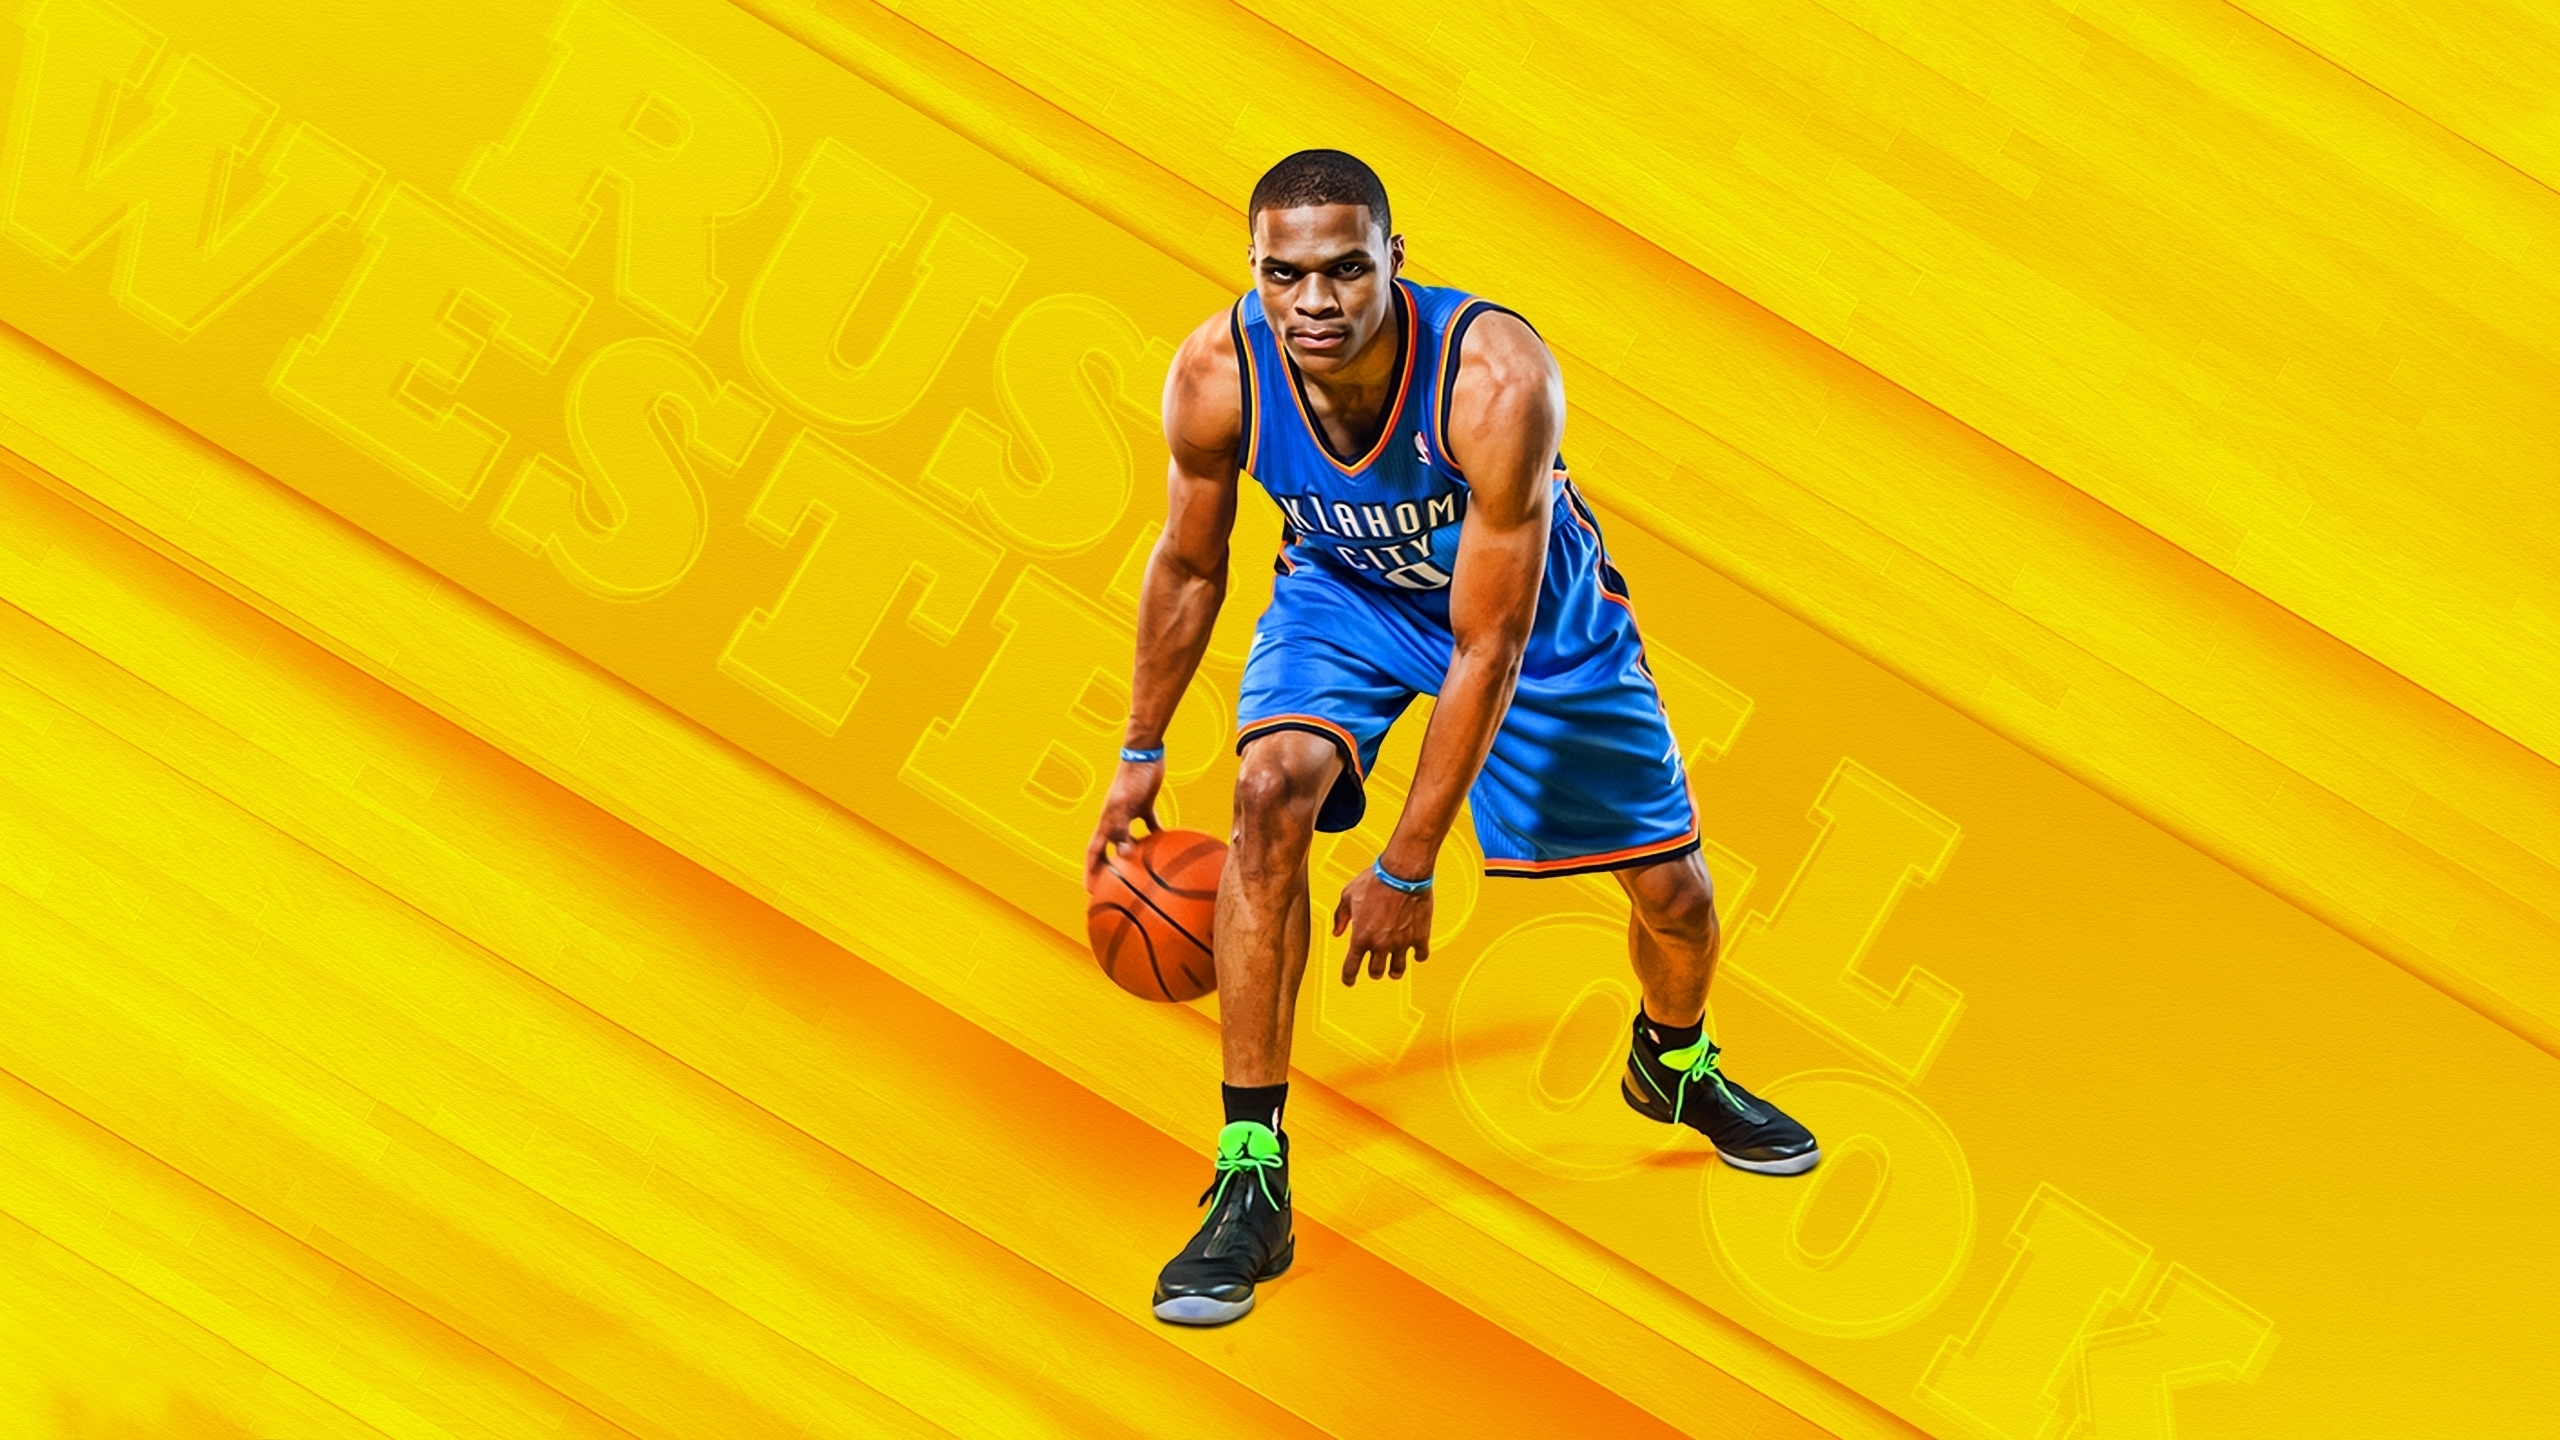 russell westbrook wallpaper,sports,basketball player,yellow,team sport,basketball